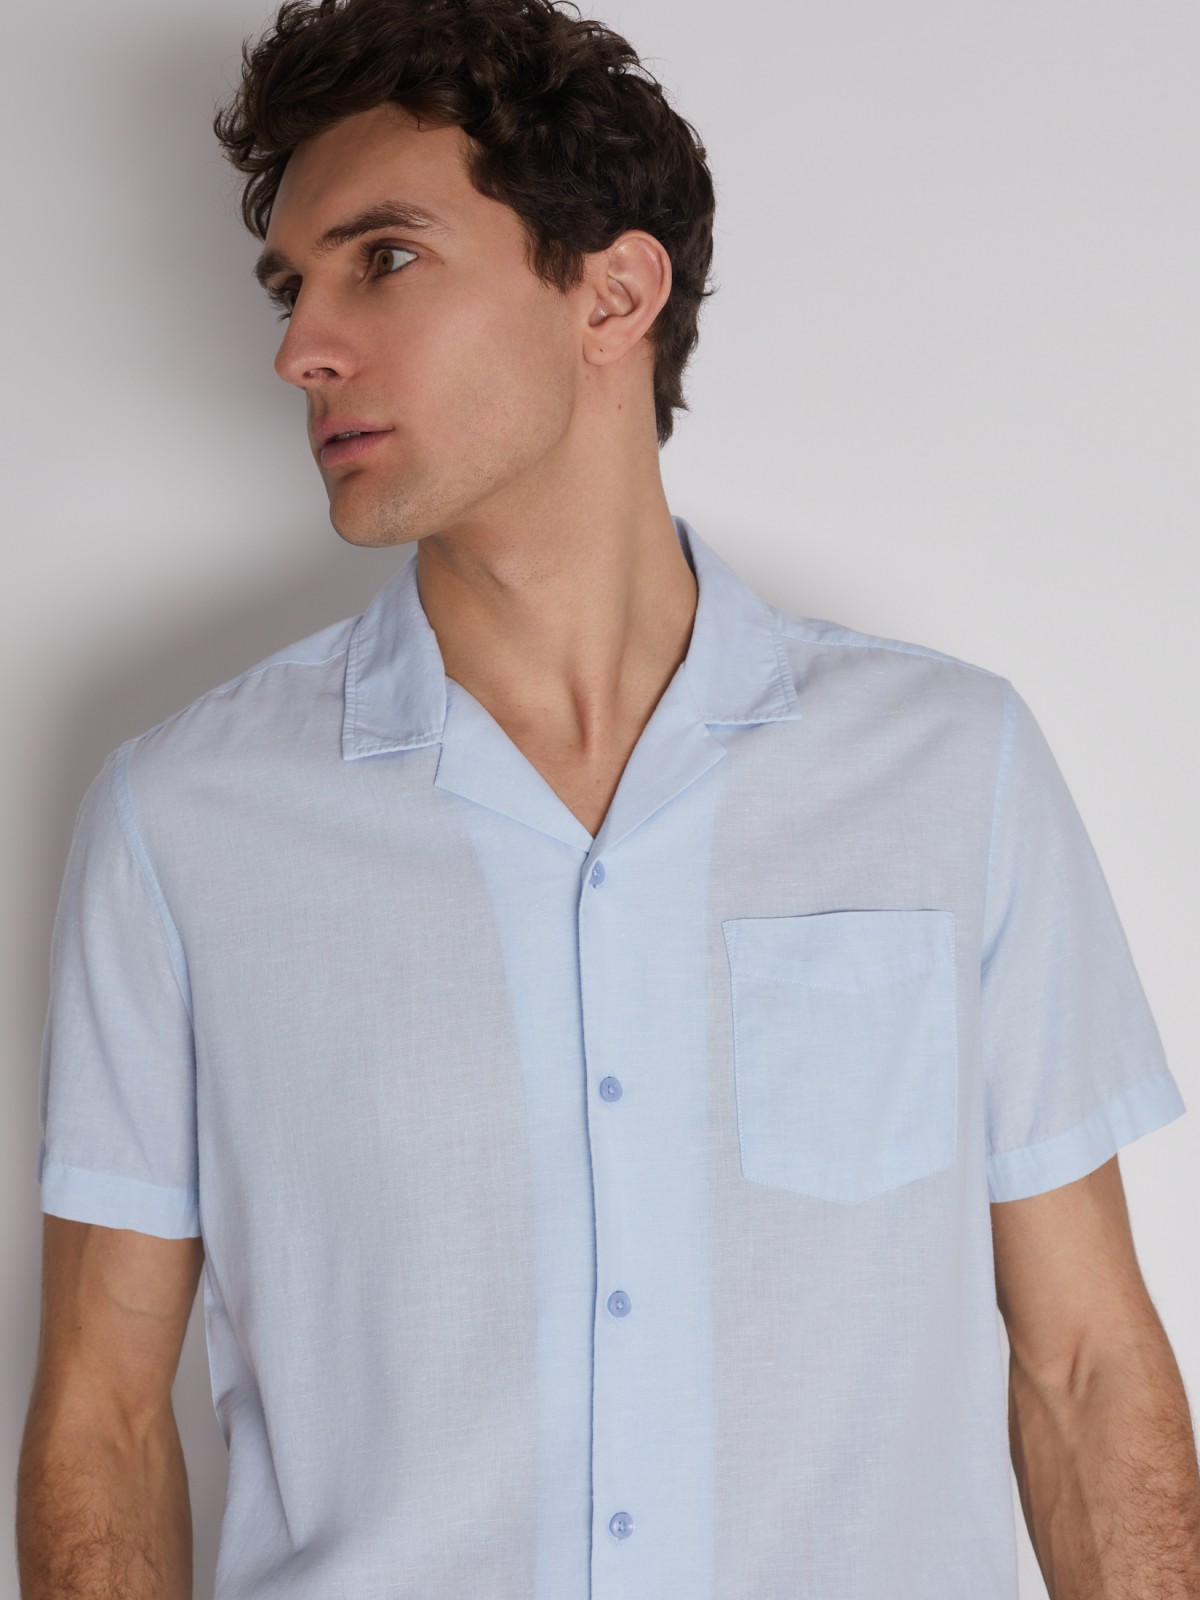 Рубашка с  короткими рукавами zolla 21224224R011, цвет светло-голубой, размер S - фото 5